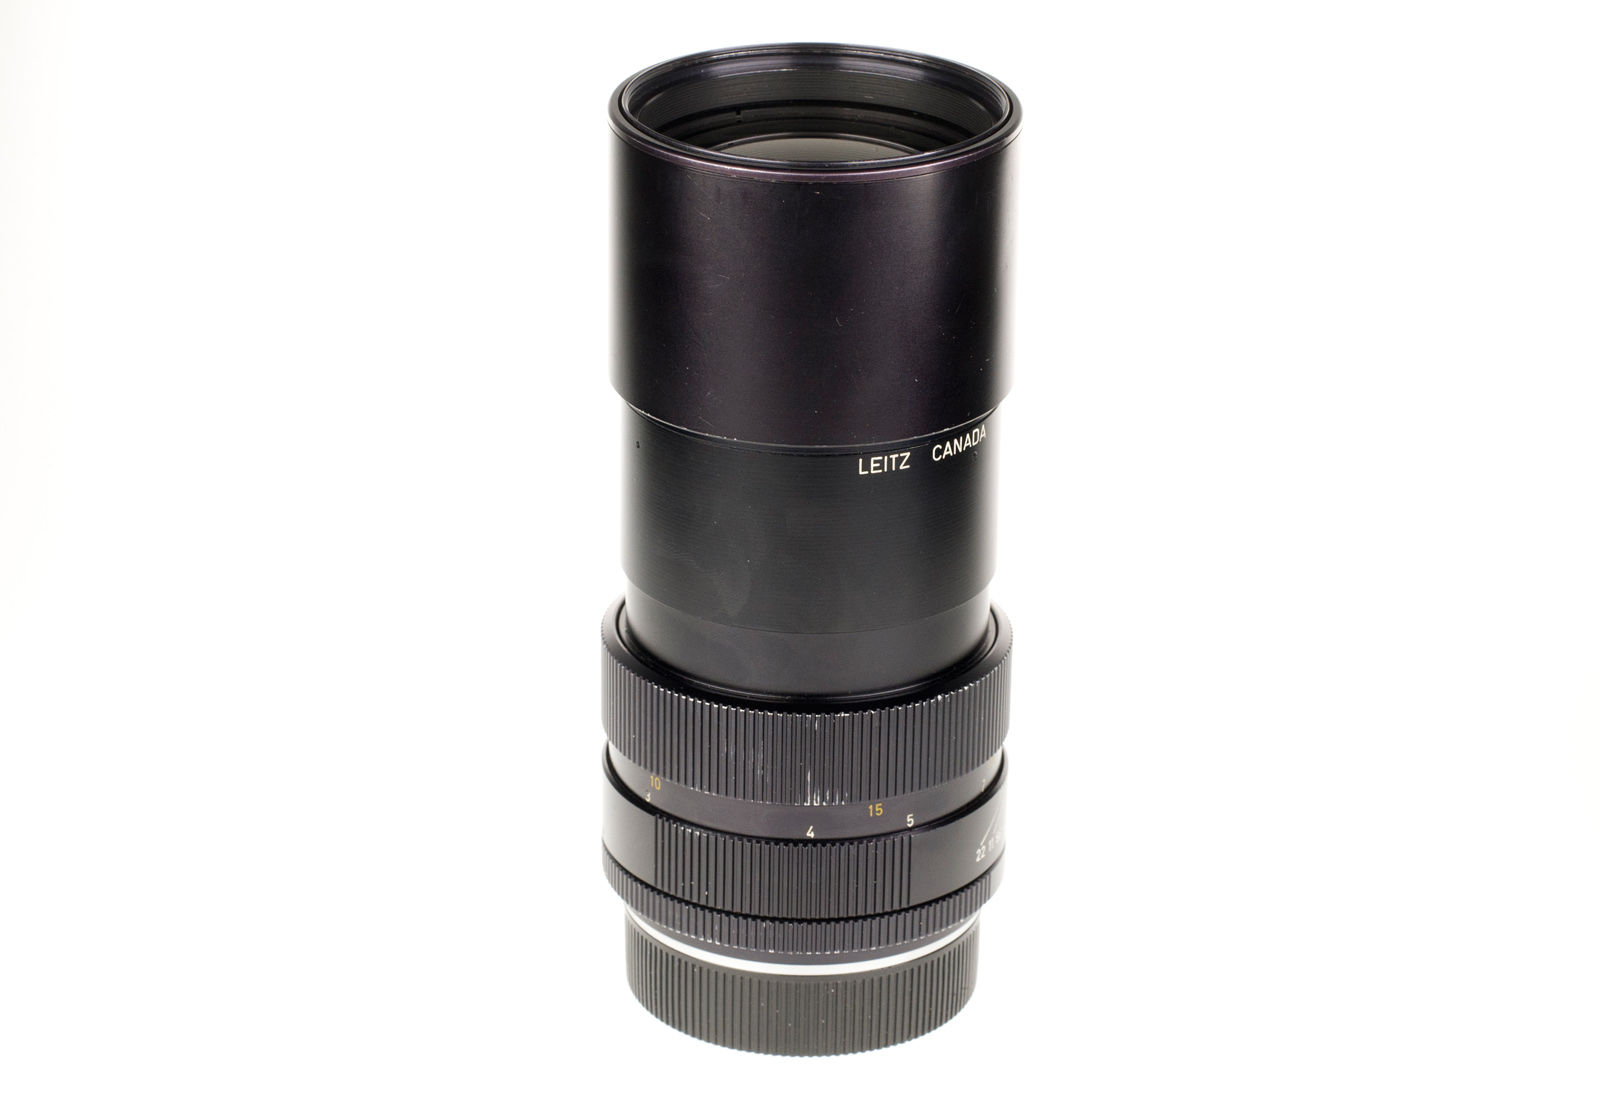 Leica APO-Telyt-R 1:3,4/180mm, black 11240